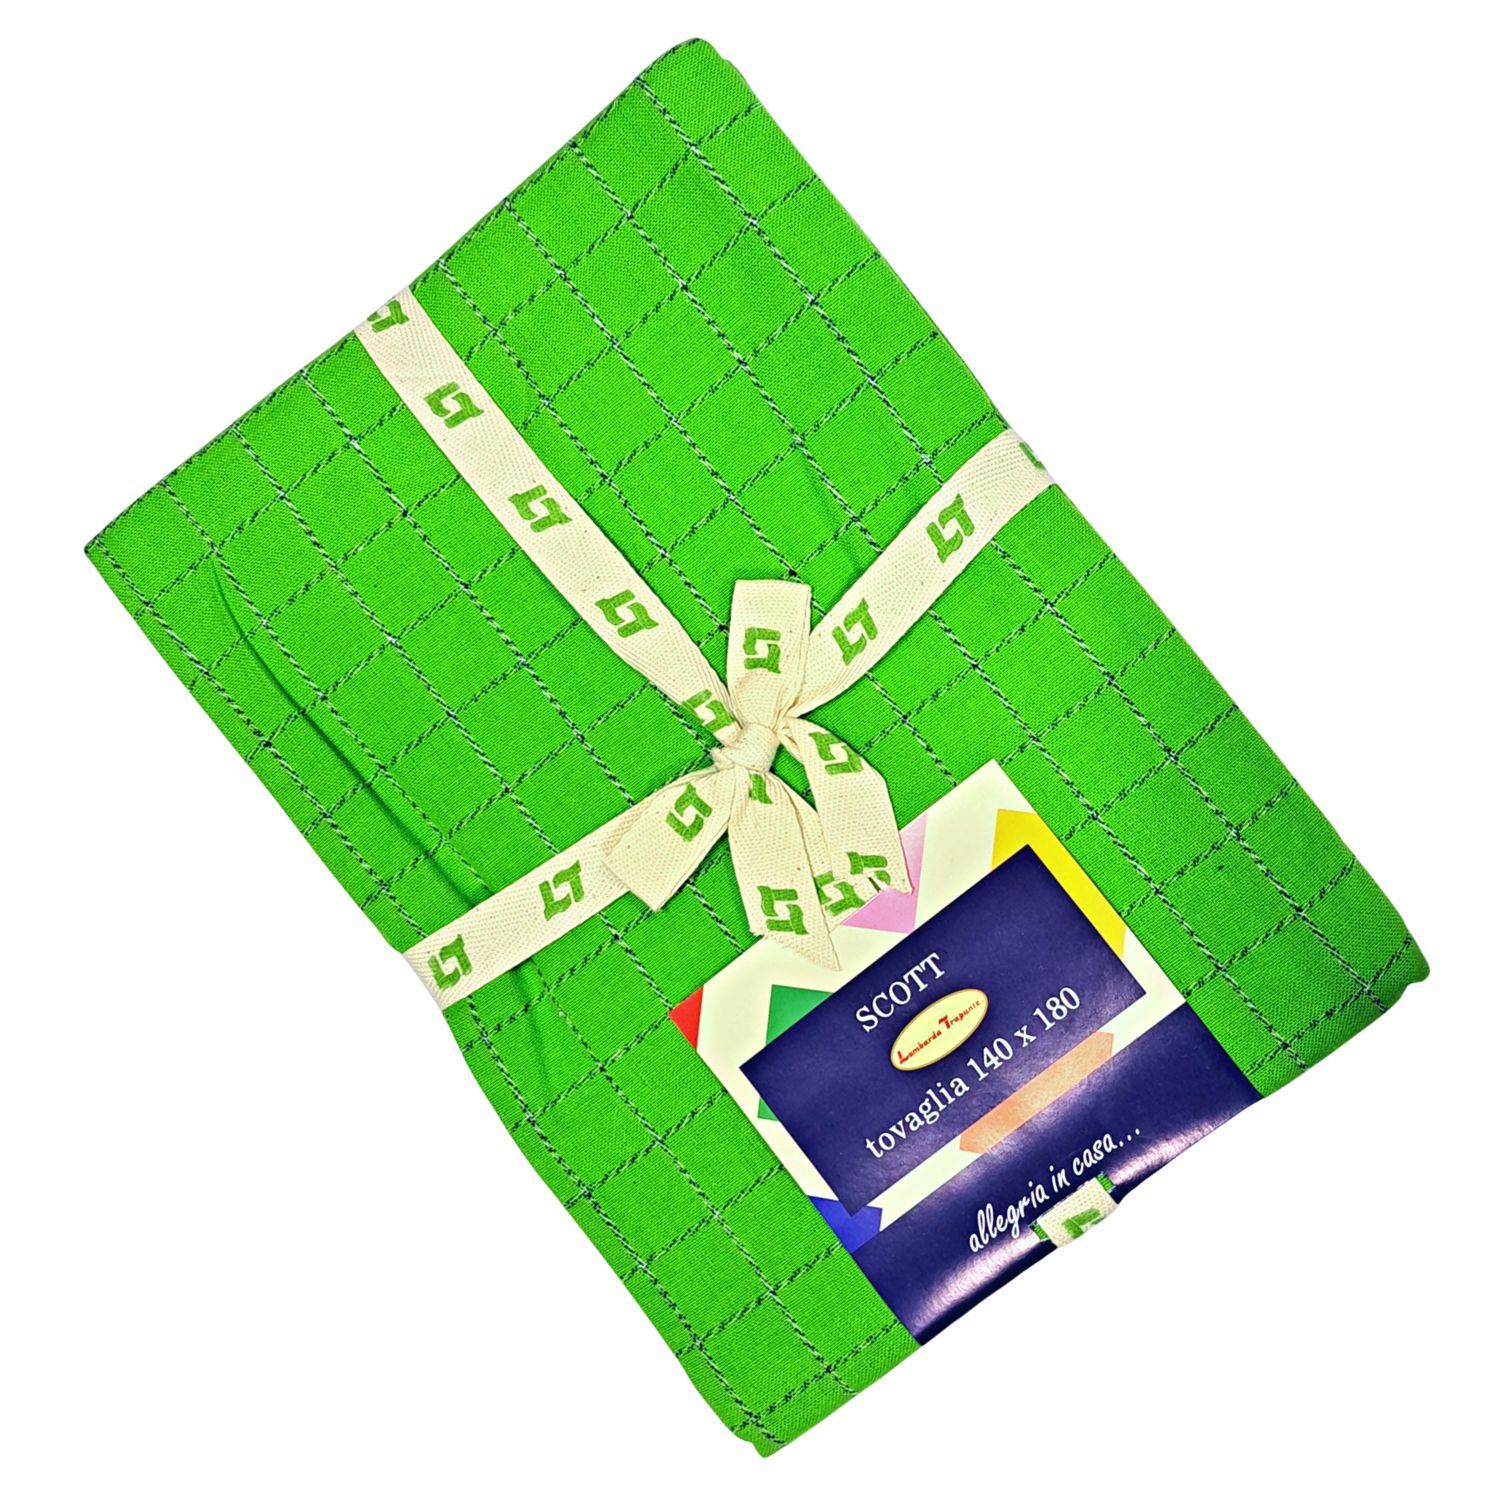 tovaglia-scott-verde-100-cotone-tinto-filo-tinta-unita-cucina-quadri-quadretti